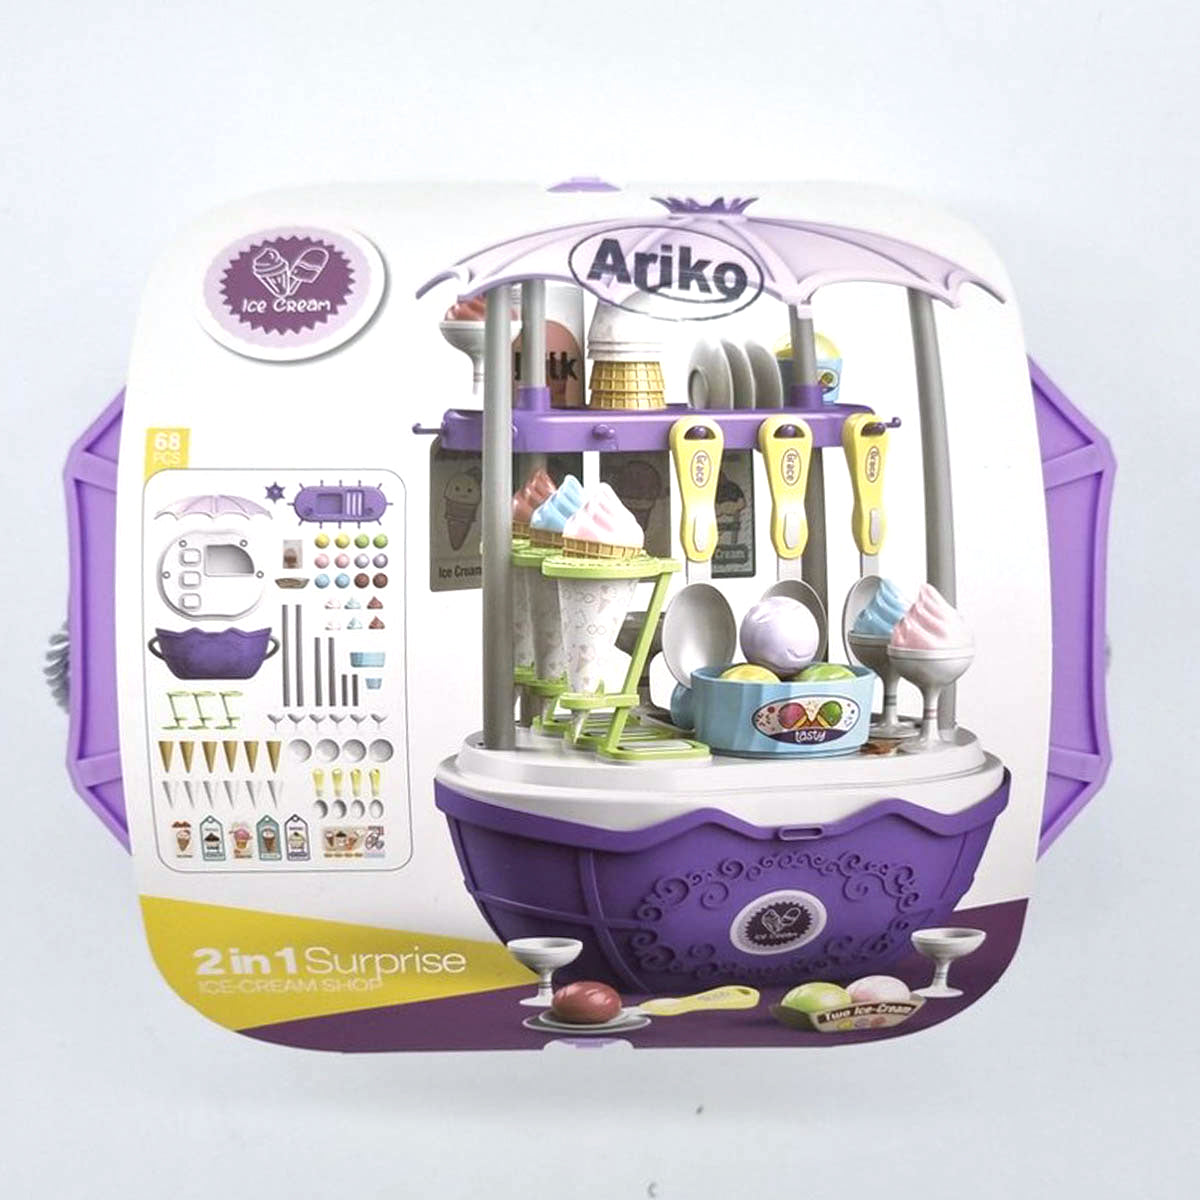 Ariko Speelgoed Koffer Ijssalon wagen winkel 68 delig - Softijs, italiaans ijs, servies, hoorntje en nog veel meer - handige meeneem koffer